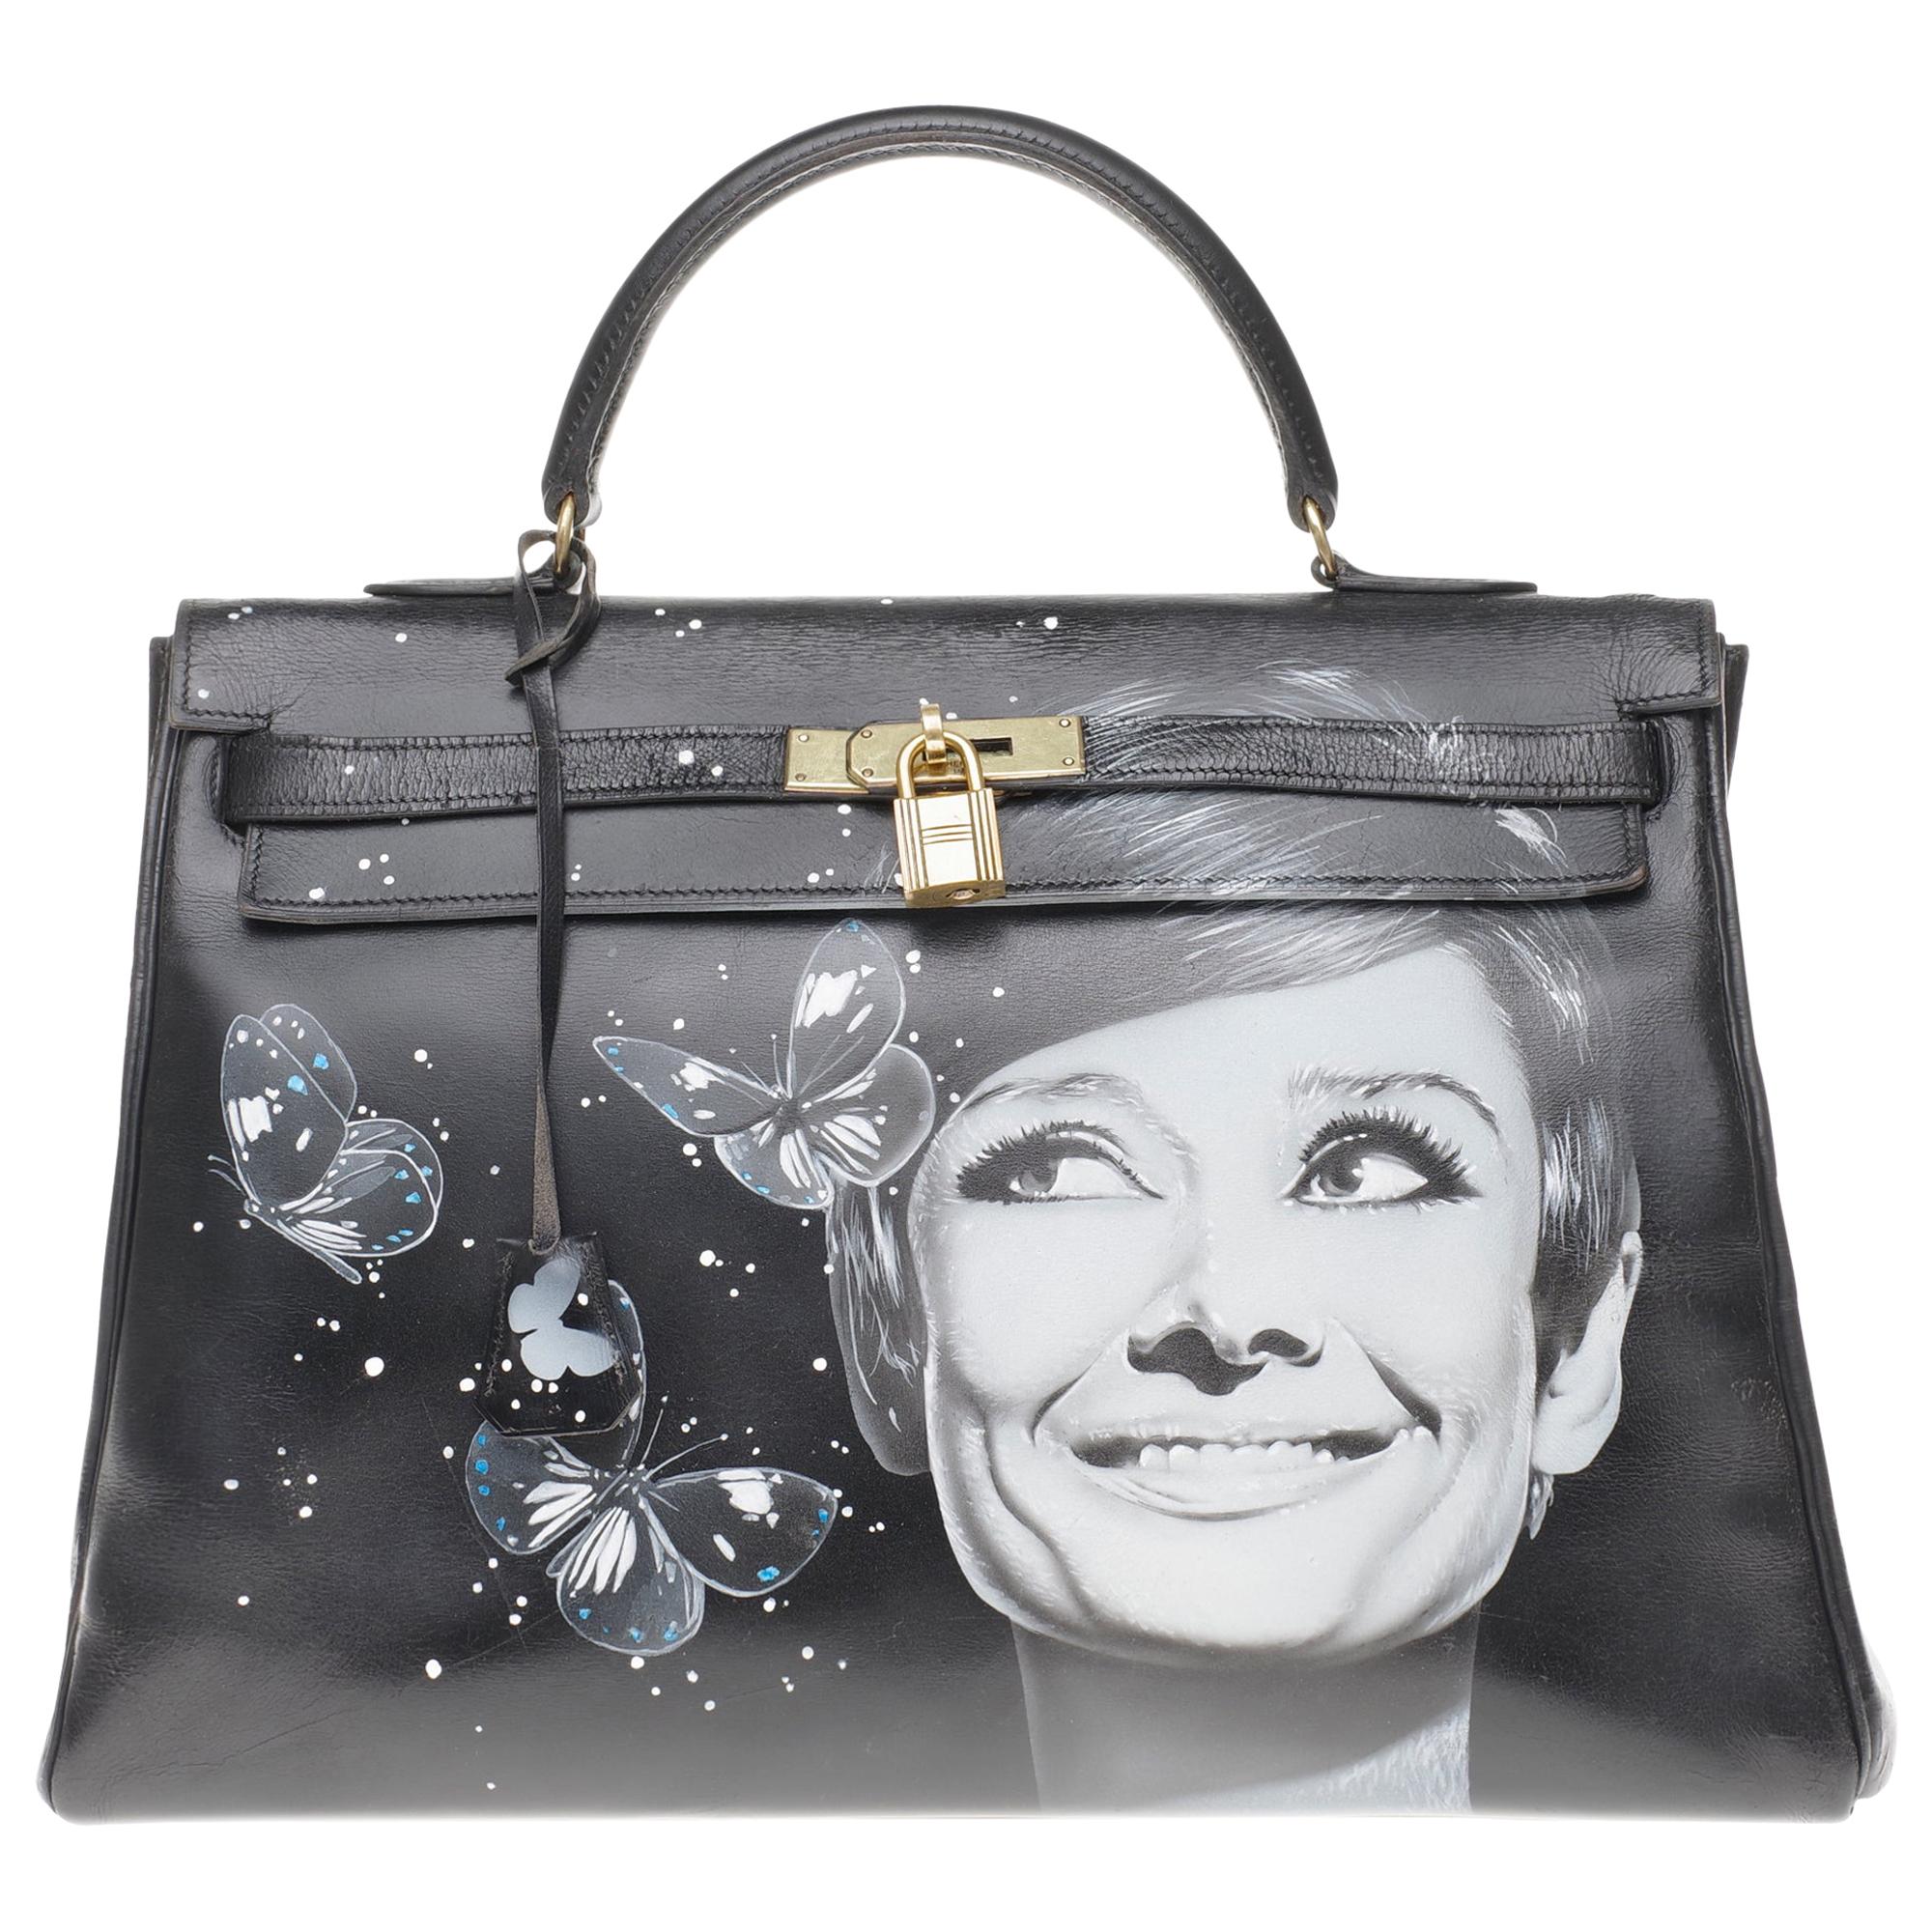 Customized "Butterflies by Kelly#47" on Kelly 35 cm handbag in black calfskin